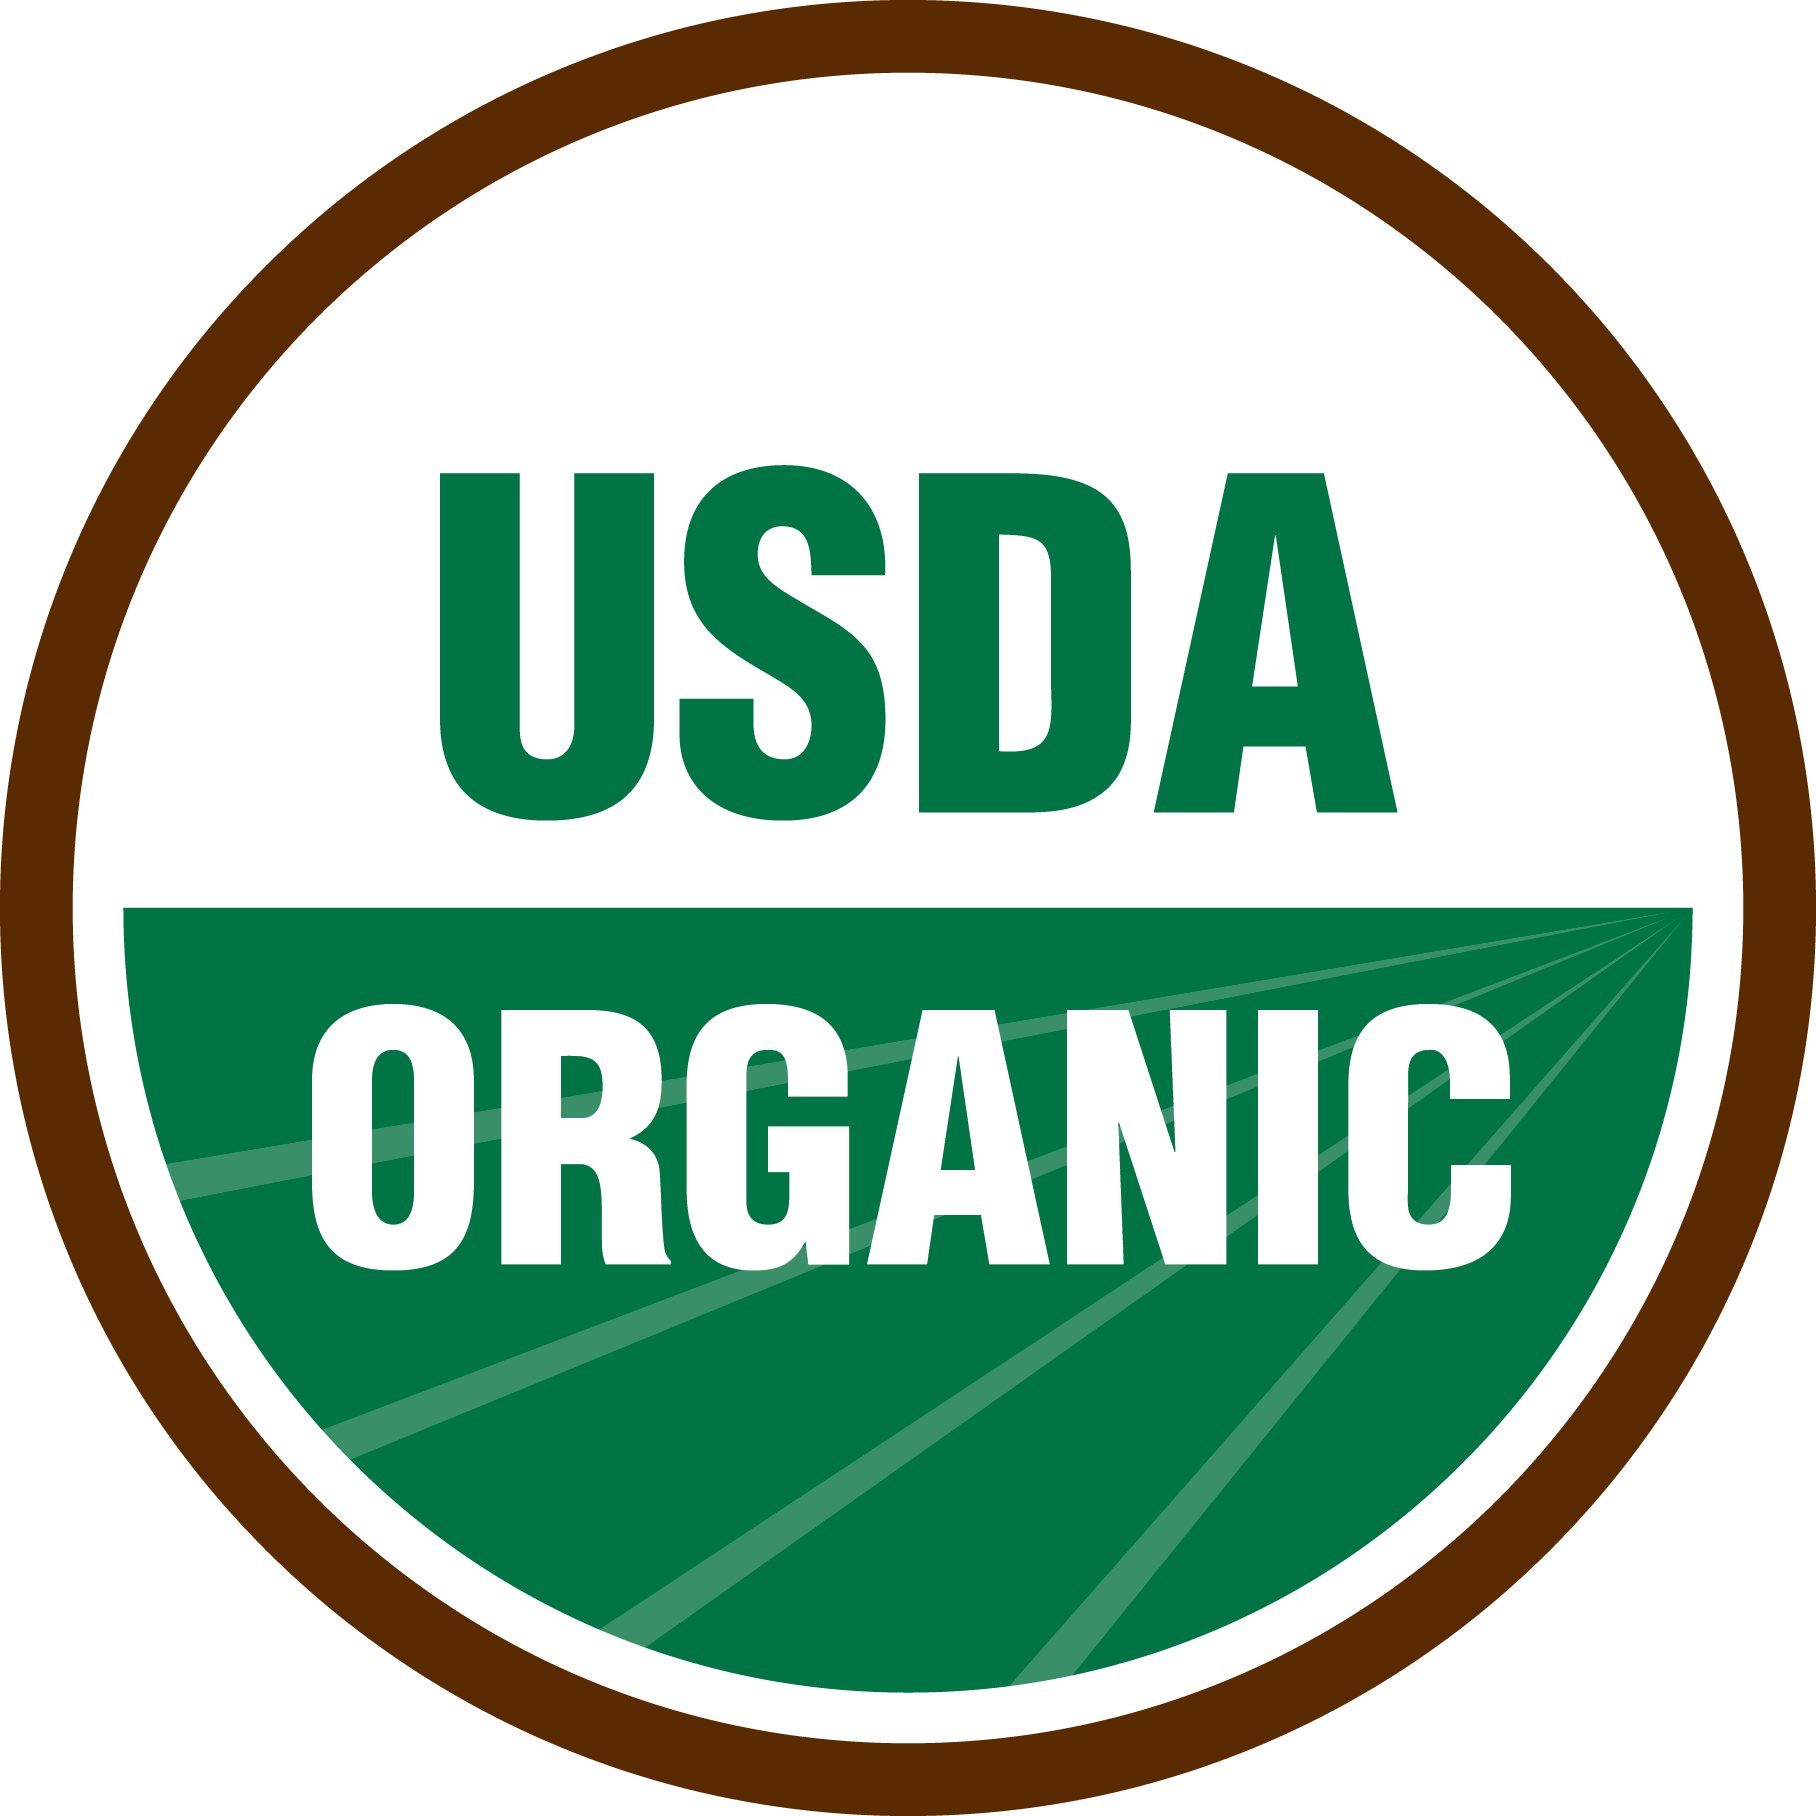 NOP Organic Certified